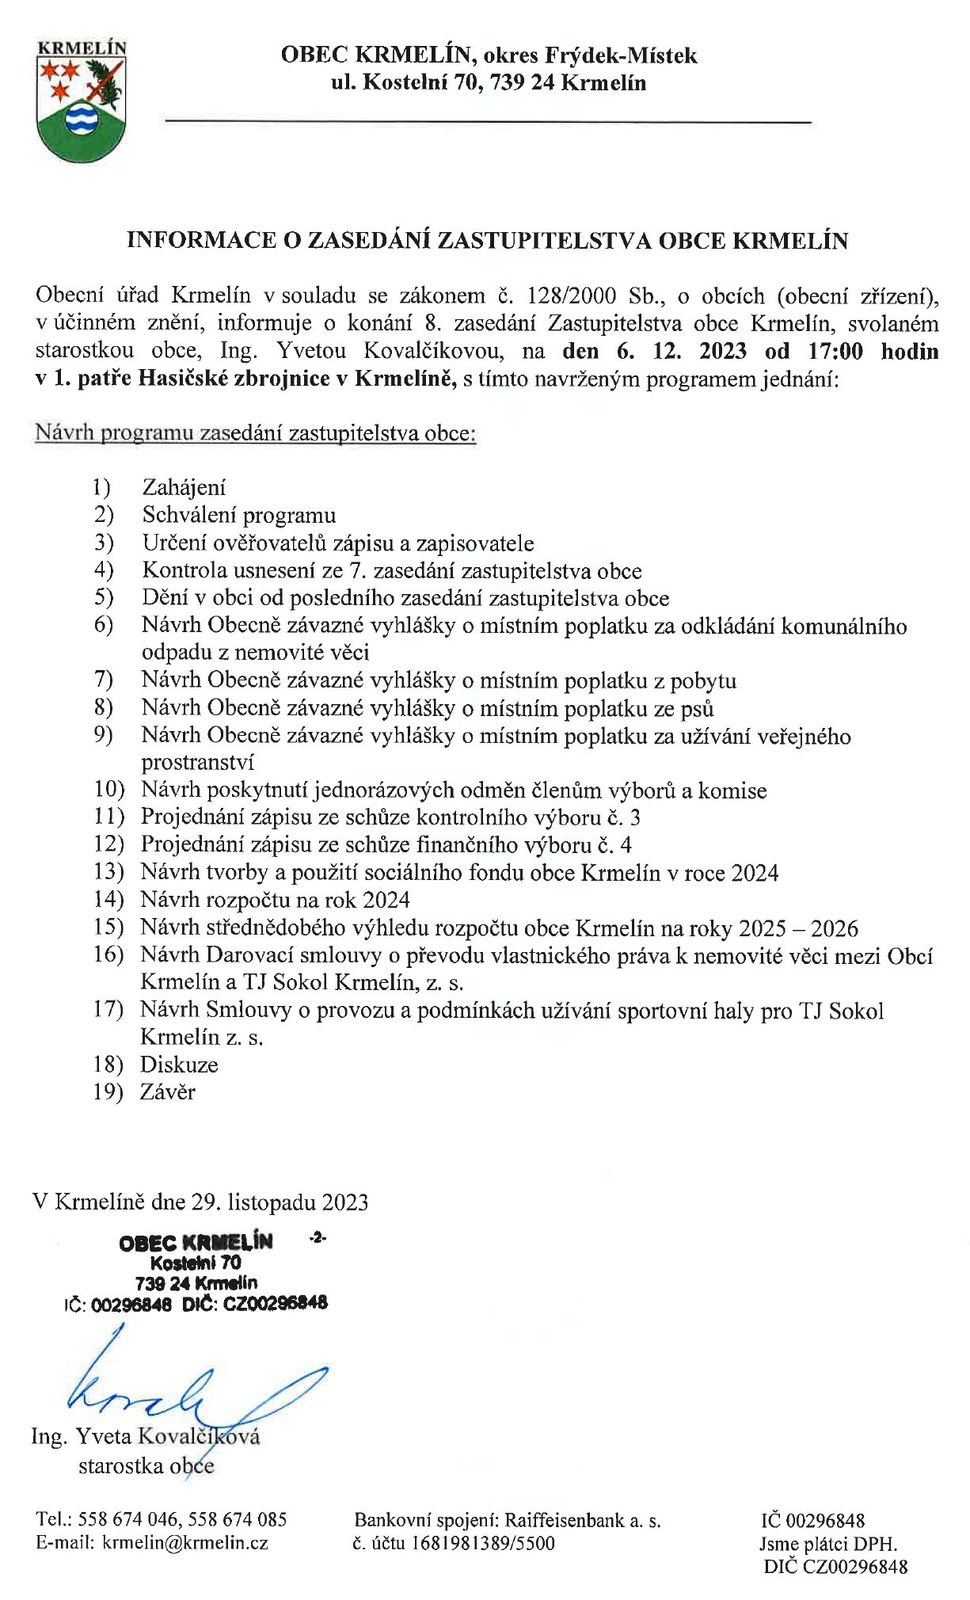 Pozvání na 8. zasedání zastupitelstva obce Krmelín - středa 6. prosince 2023